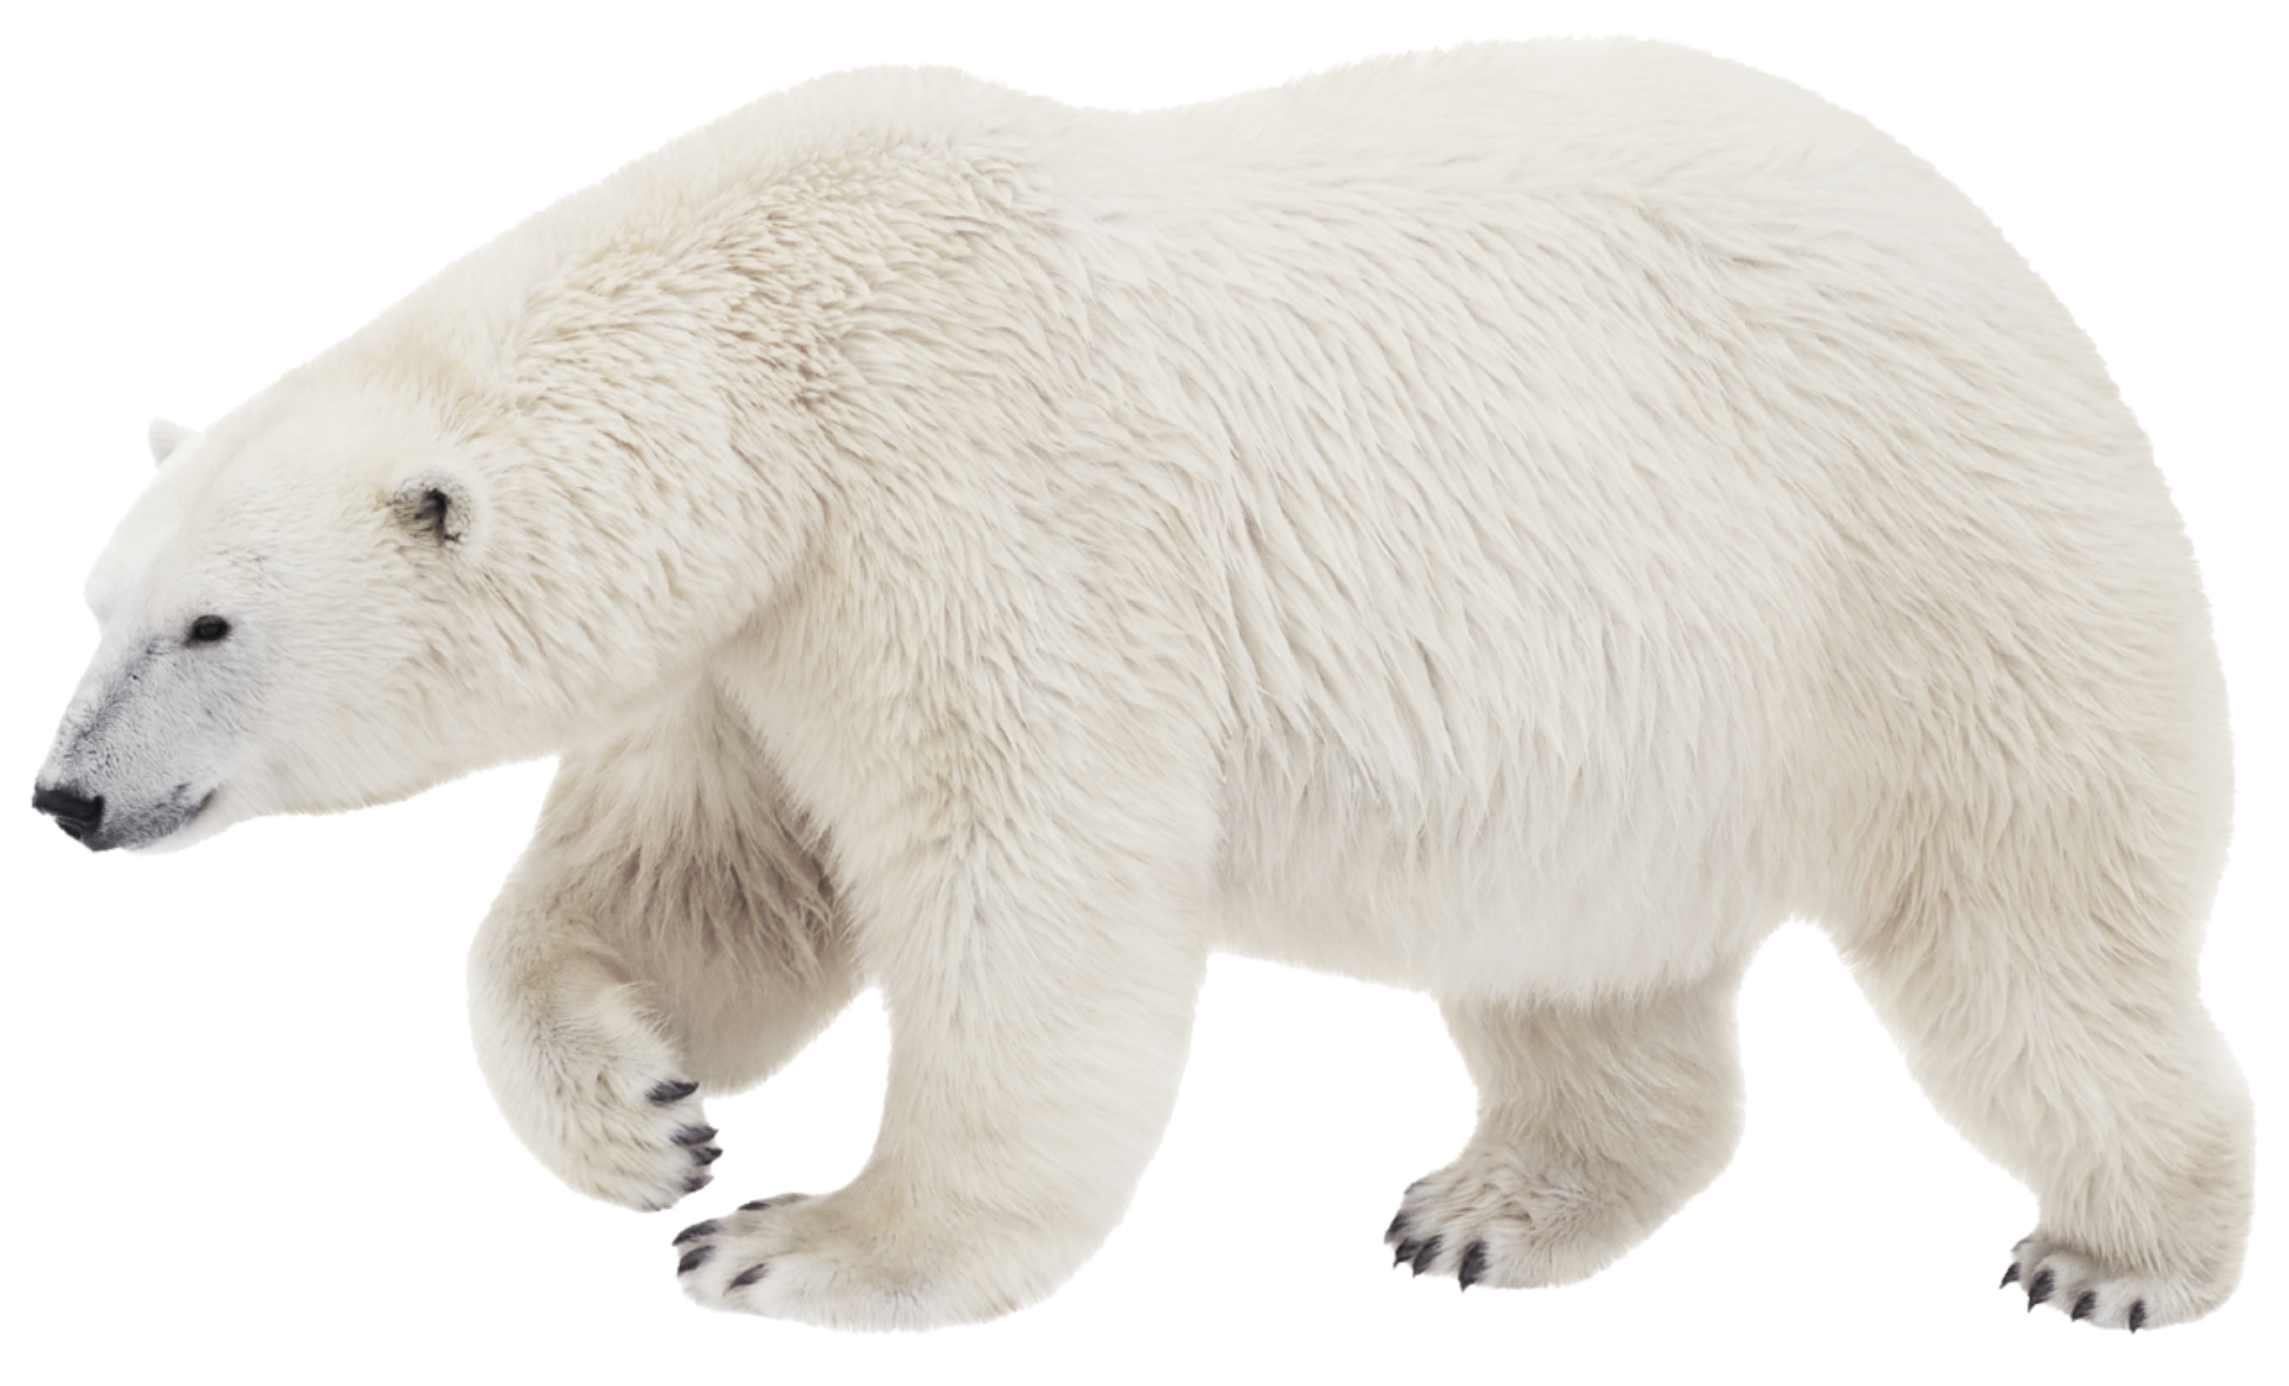 Polar bear Brown bear Stock photography Transparency - polar bear png ...